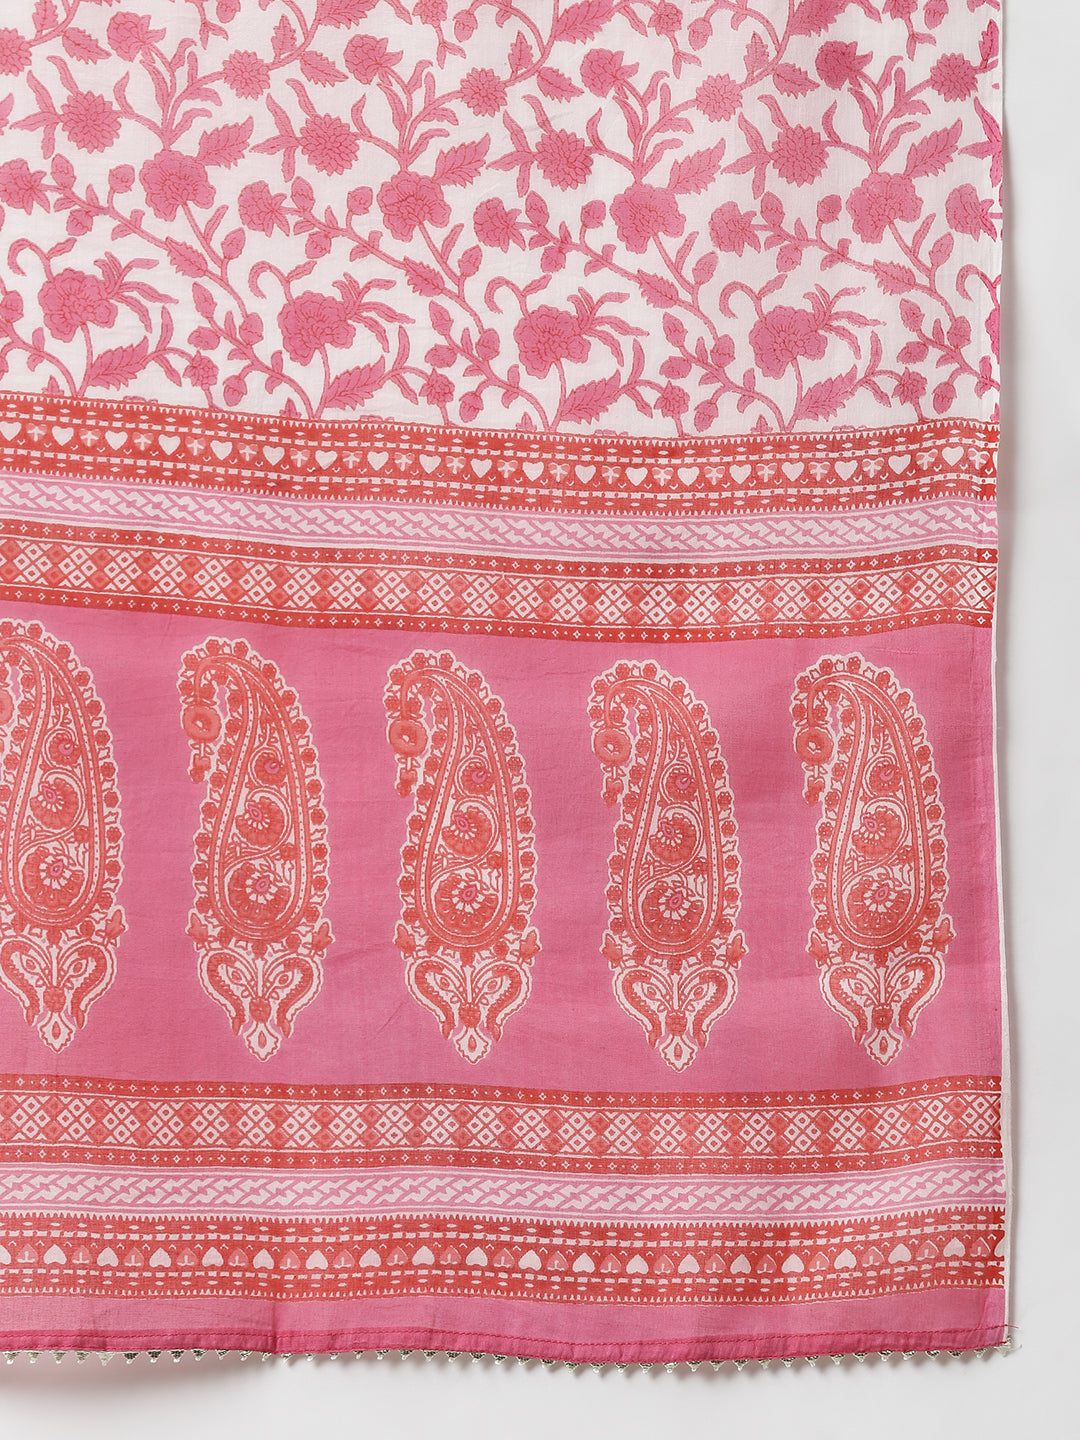 Janasya Women's Pink Cotton Floral Print Kurta With Pant And Dupatta - Distacart